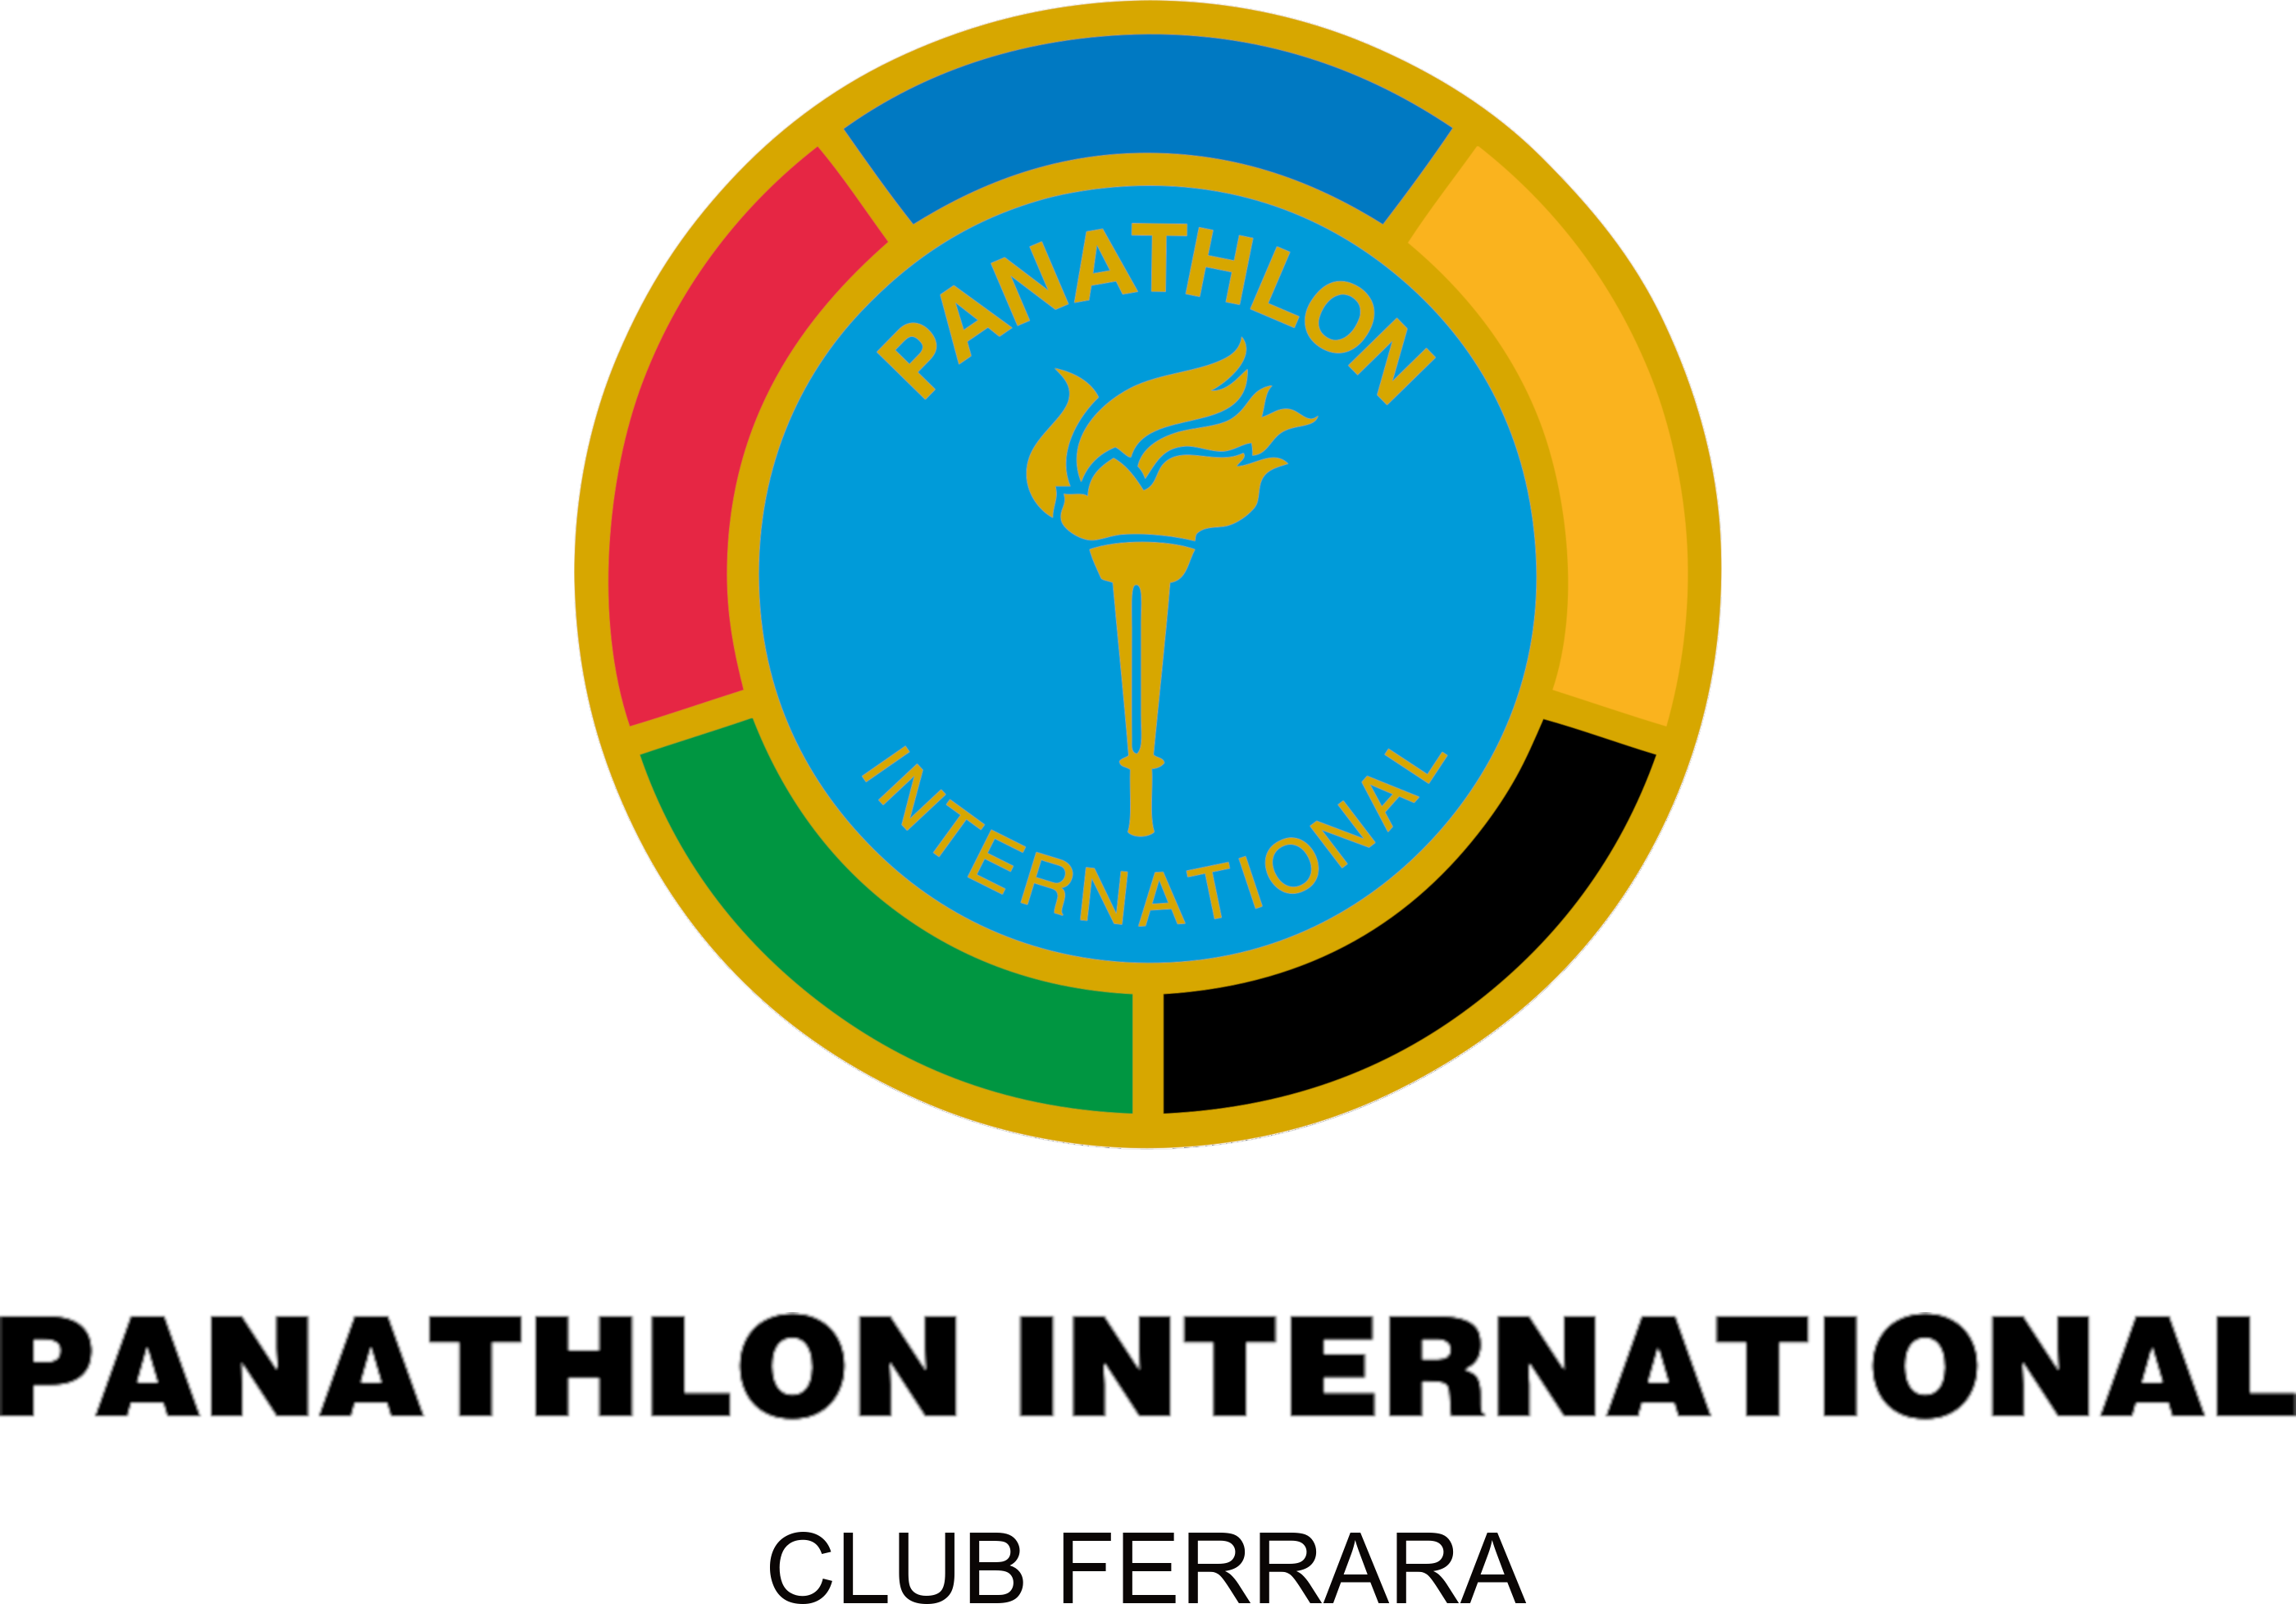 logo panathlon ferrara